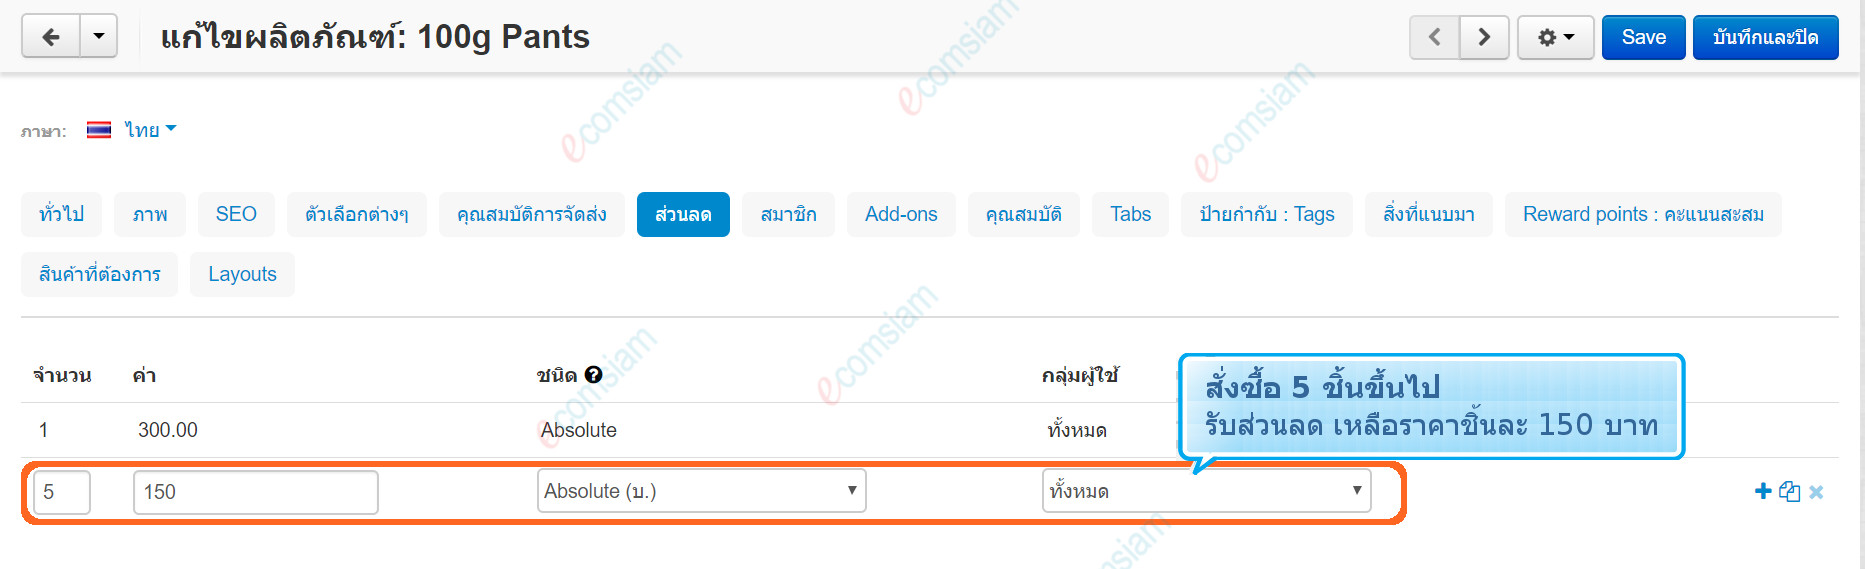 เว็บไซต์สำเร็จรูปไทย - คู่มือร้านออนไลน์ - ผลิตภัณฑ์ กำหนดราคาขายส่งสำหรับผลิตภัณฑ์